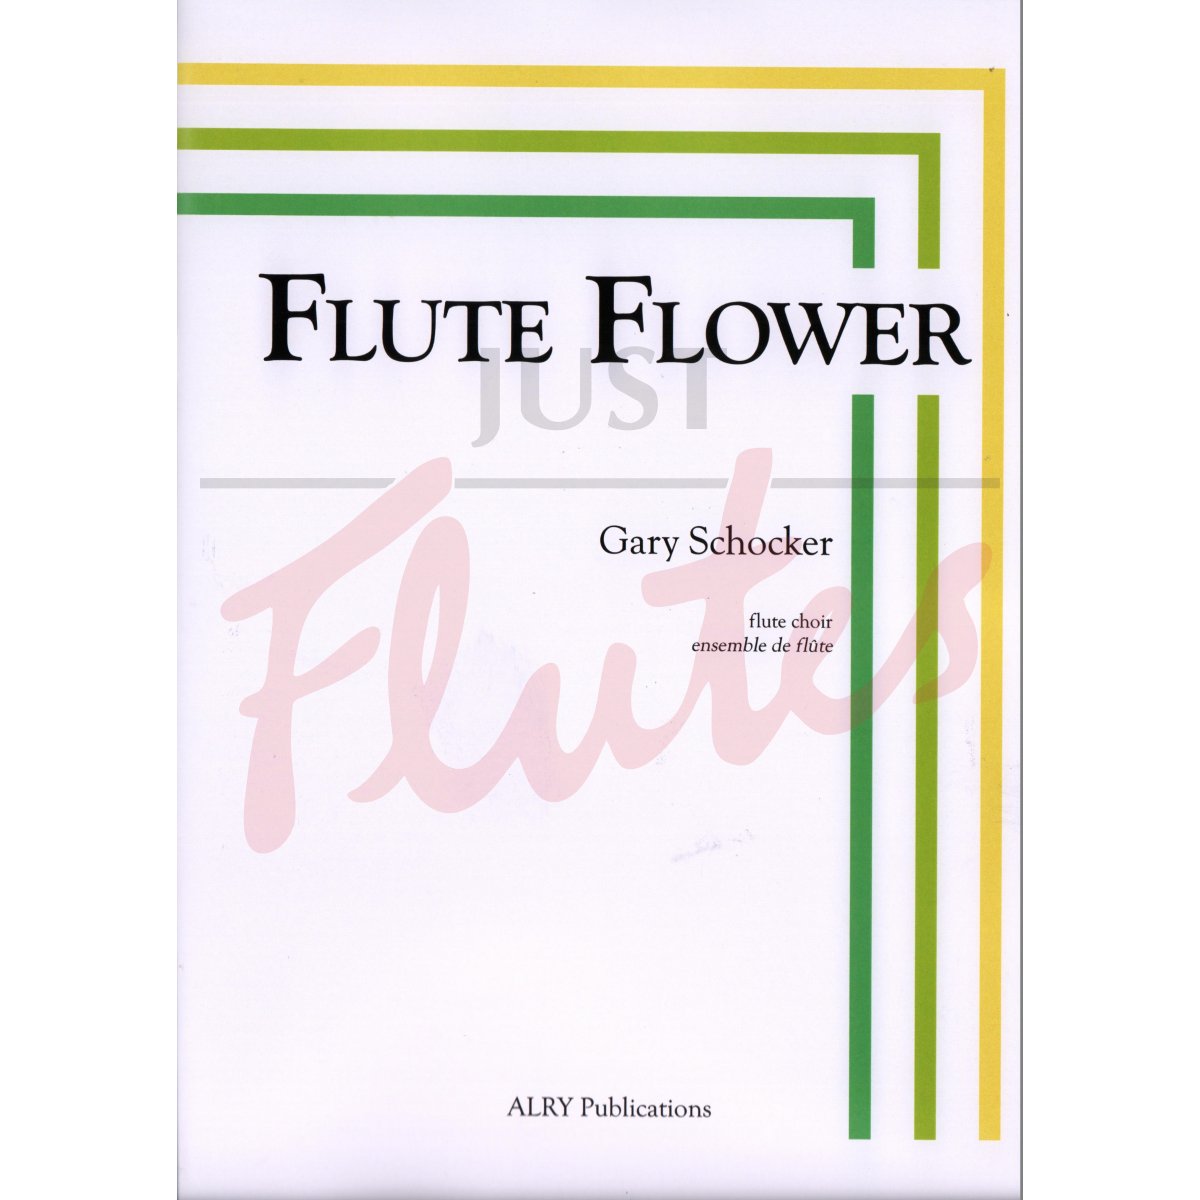 Flute Flower for Flute Choir